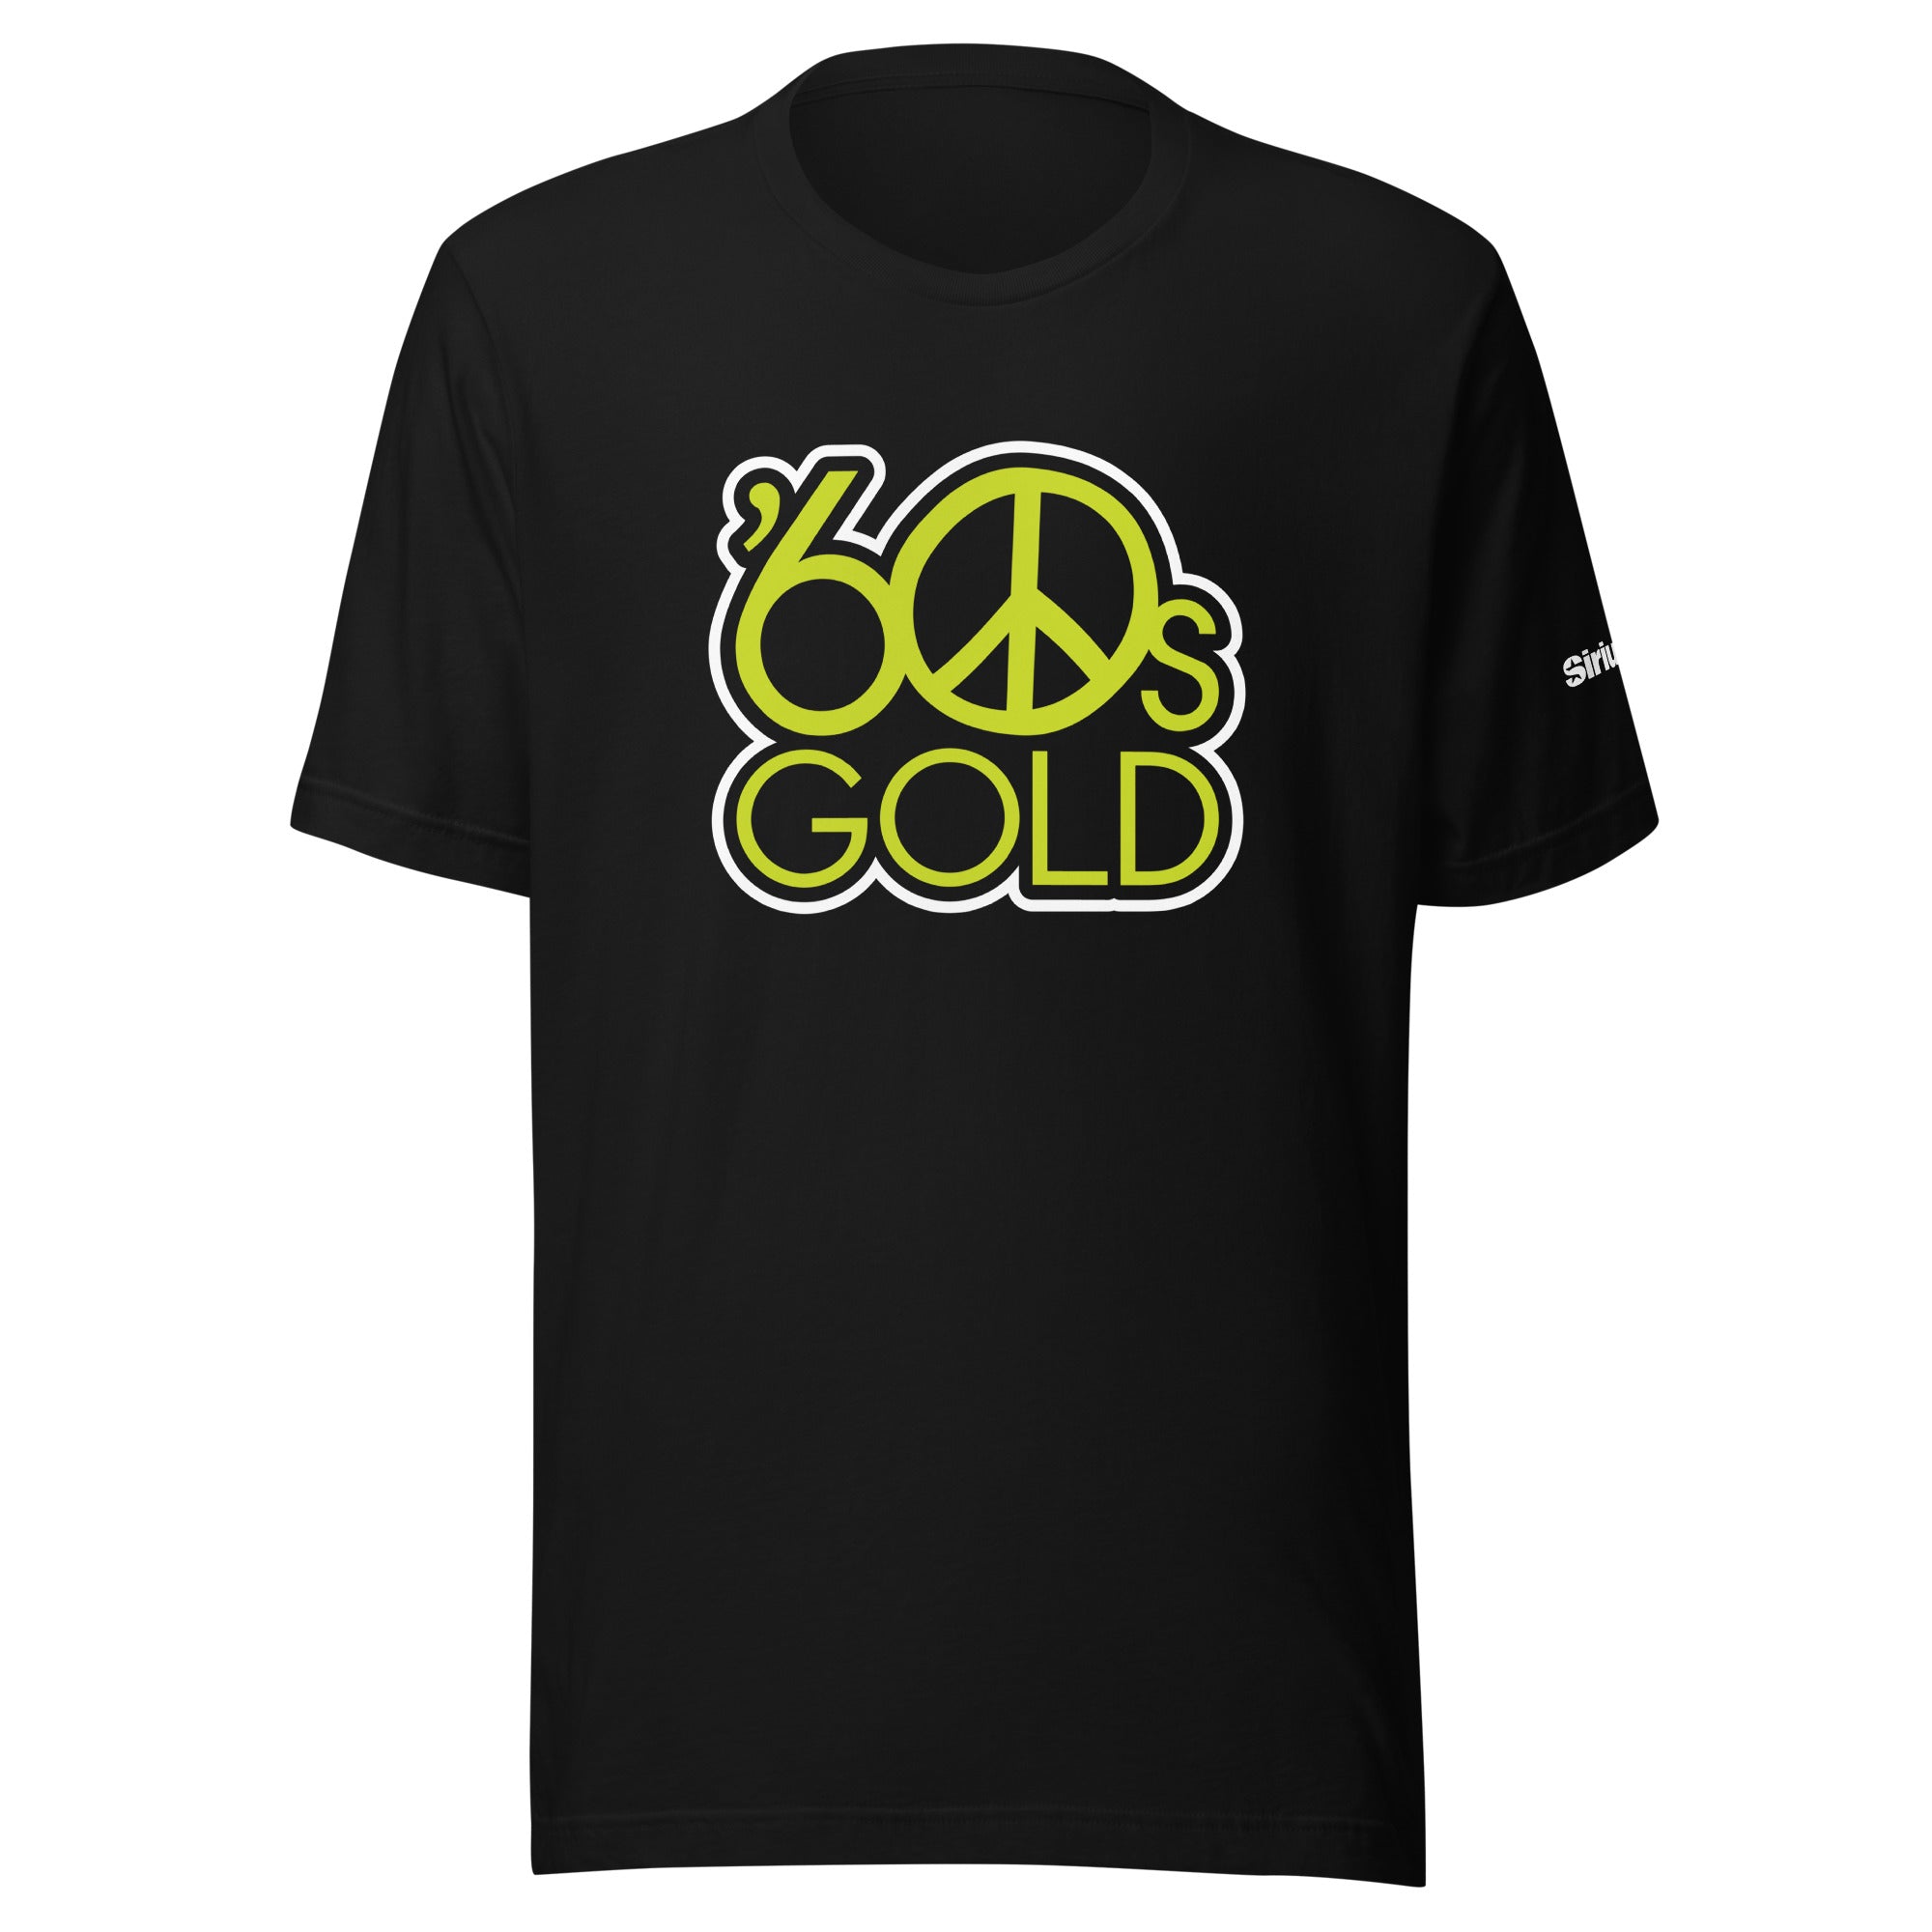 60s Gold: T-shirt (Black)